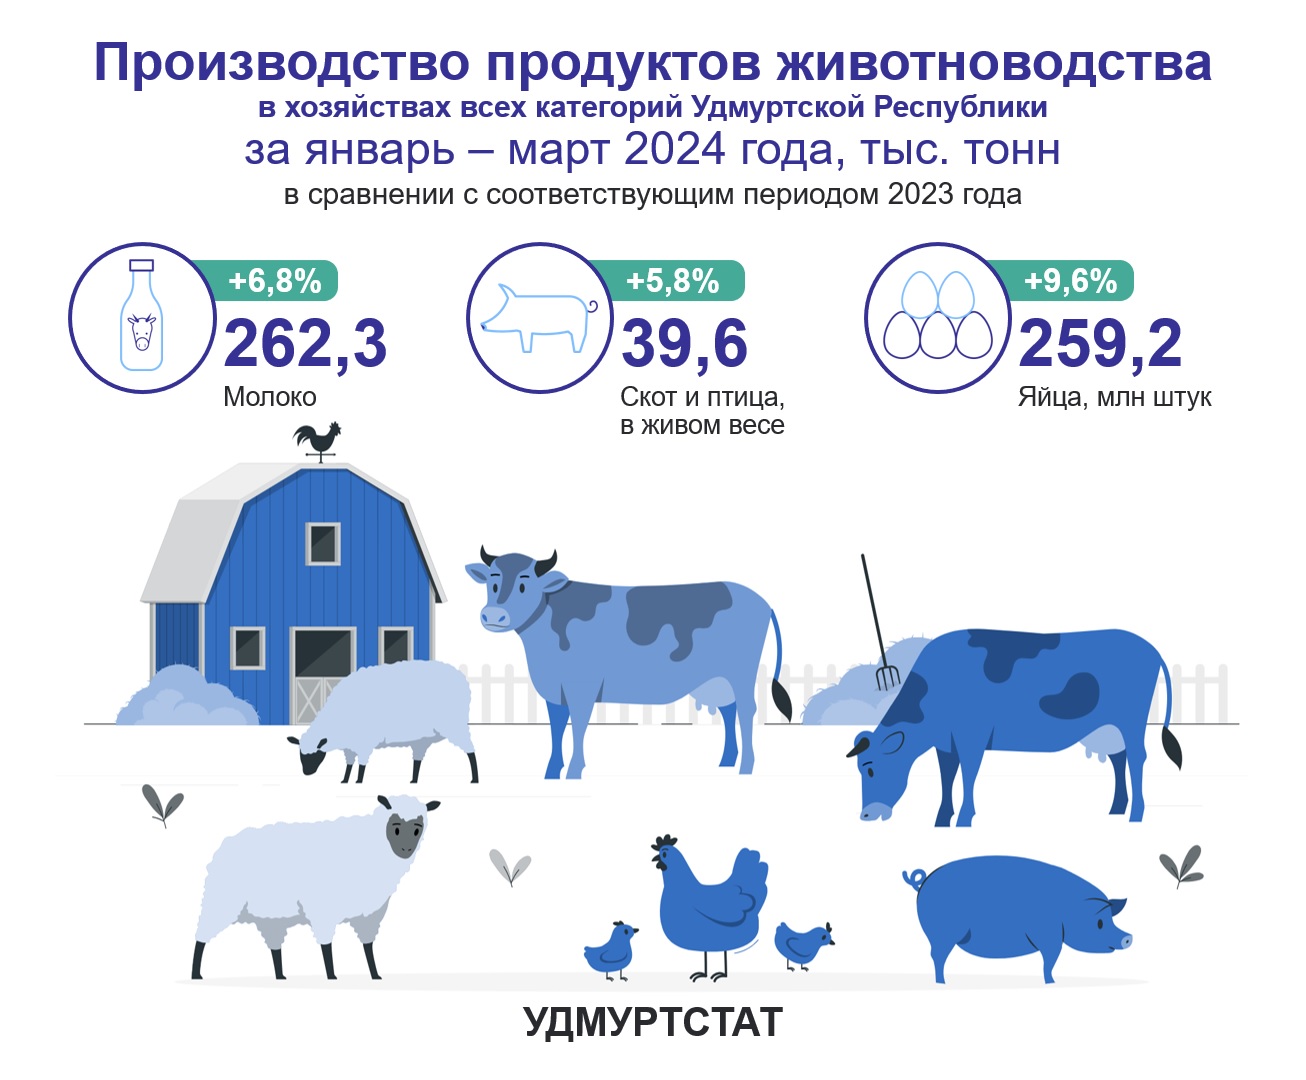 Производство продуктов животноводства за январь – март 2024 года.